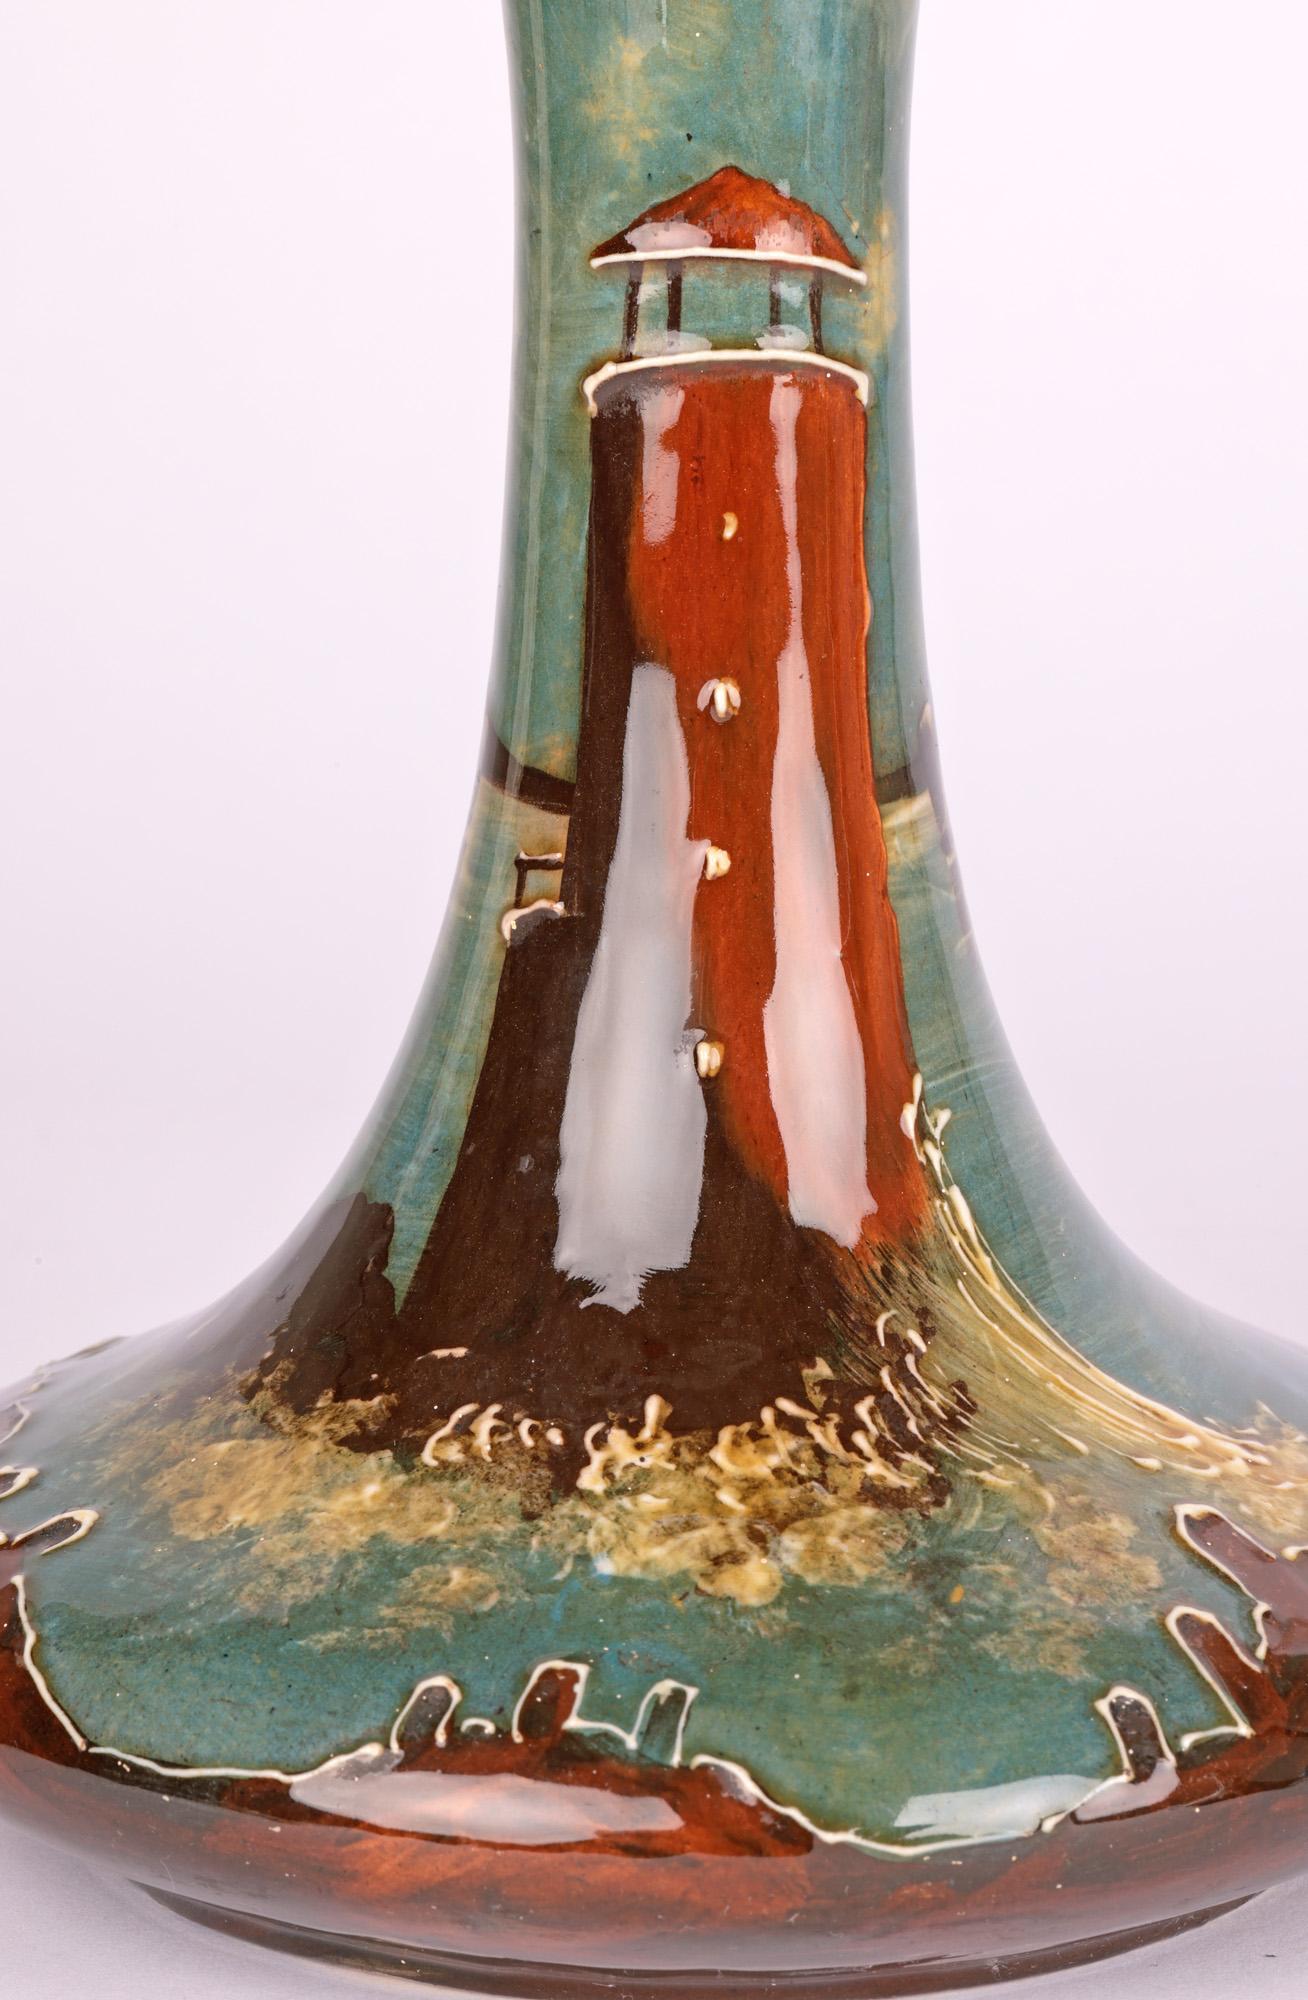 Ein seltenes und ungewöhnliches Paar Jugendstil-Keramikvasen, handbemalt mit Leuchttürmen, die Thomas Forester zugeschrieben werden und aus der Zeit um 1910 stammen. Die Vasen haben die Form einer Karaffe mit einem breiten, gedrungenen, runden